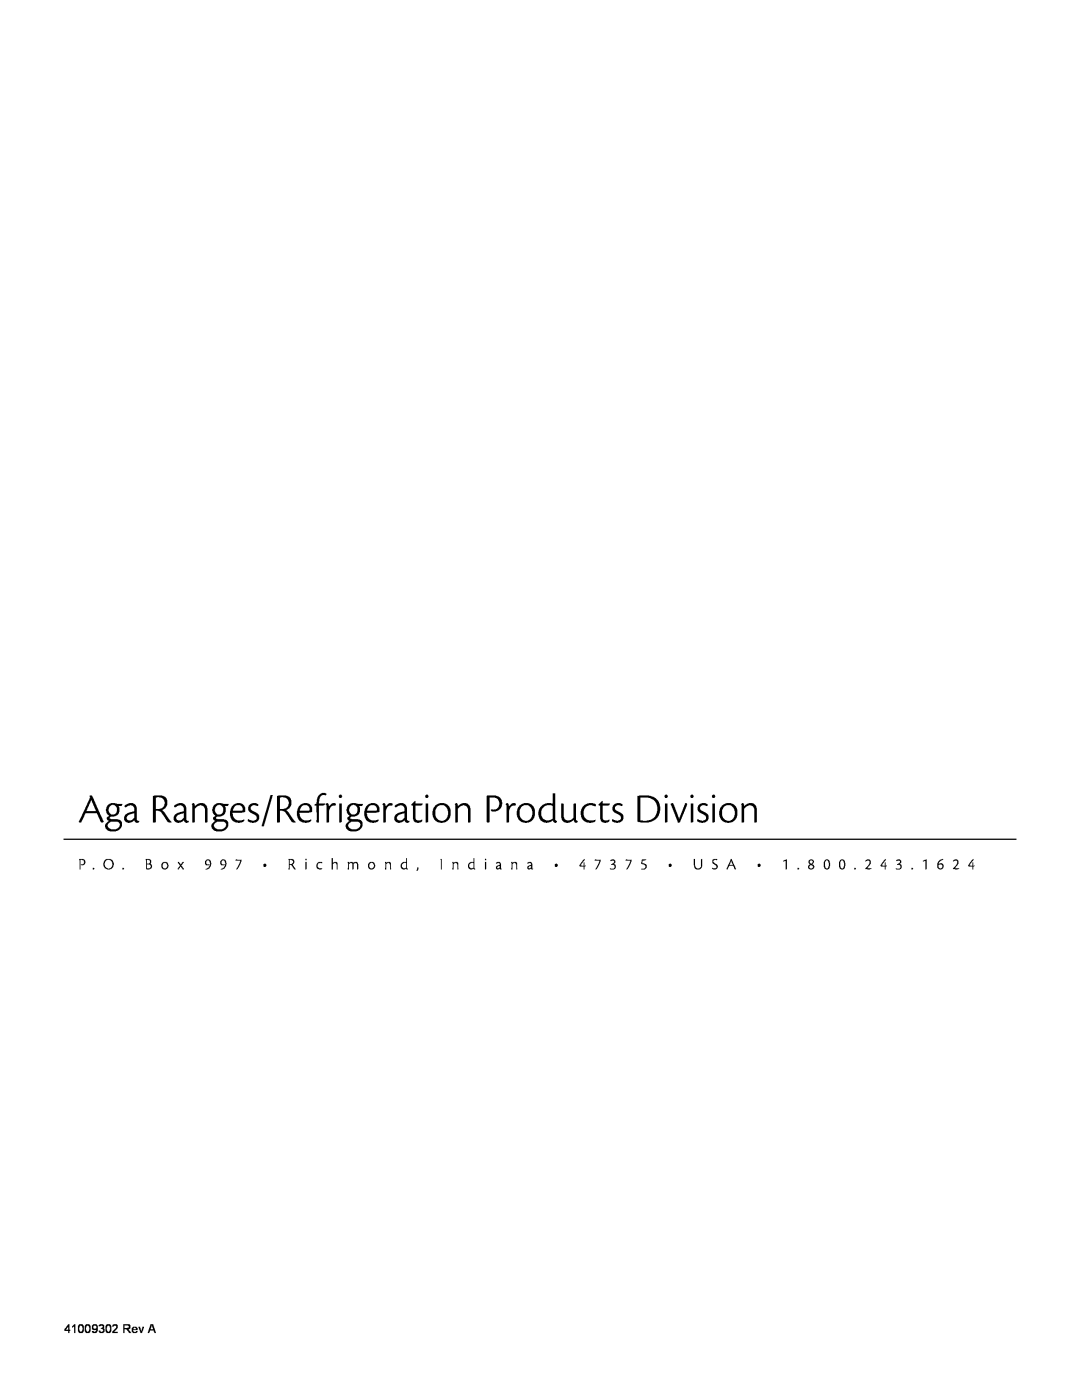 Aga Ranges 61ARA 115V manual Aga Ranges/Refrigeration Products Division, Rev A 